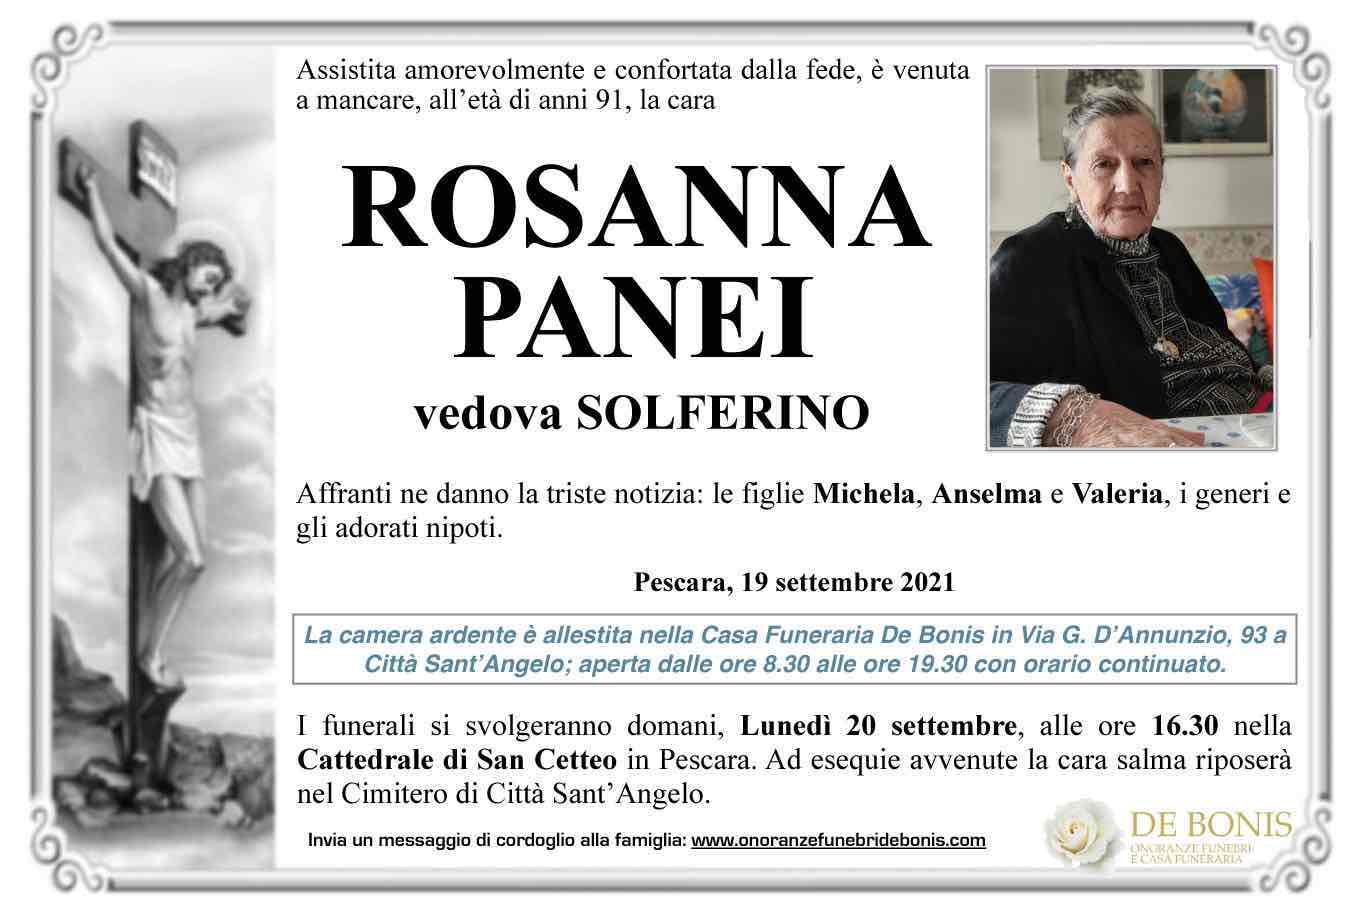 Rosanna Panei